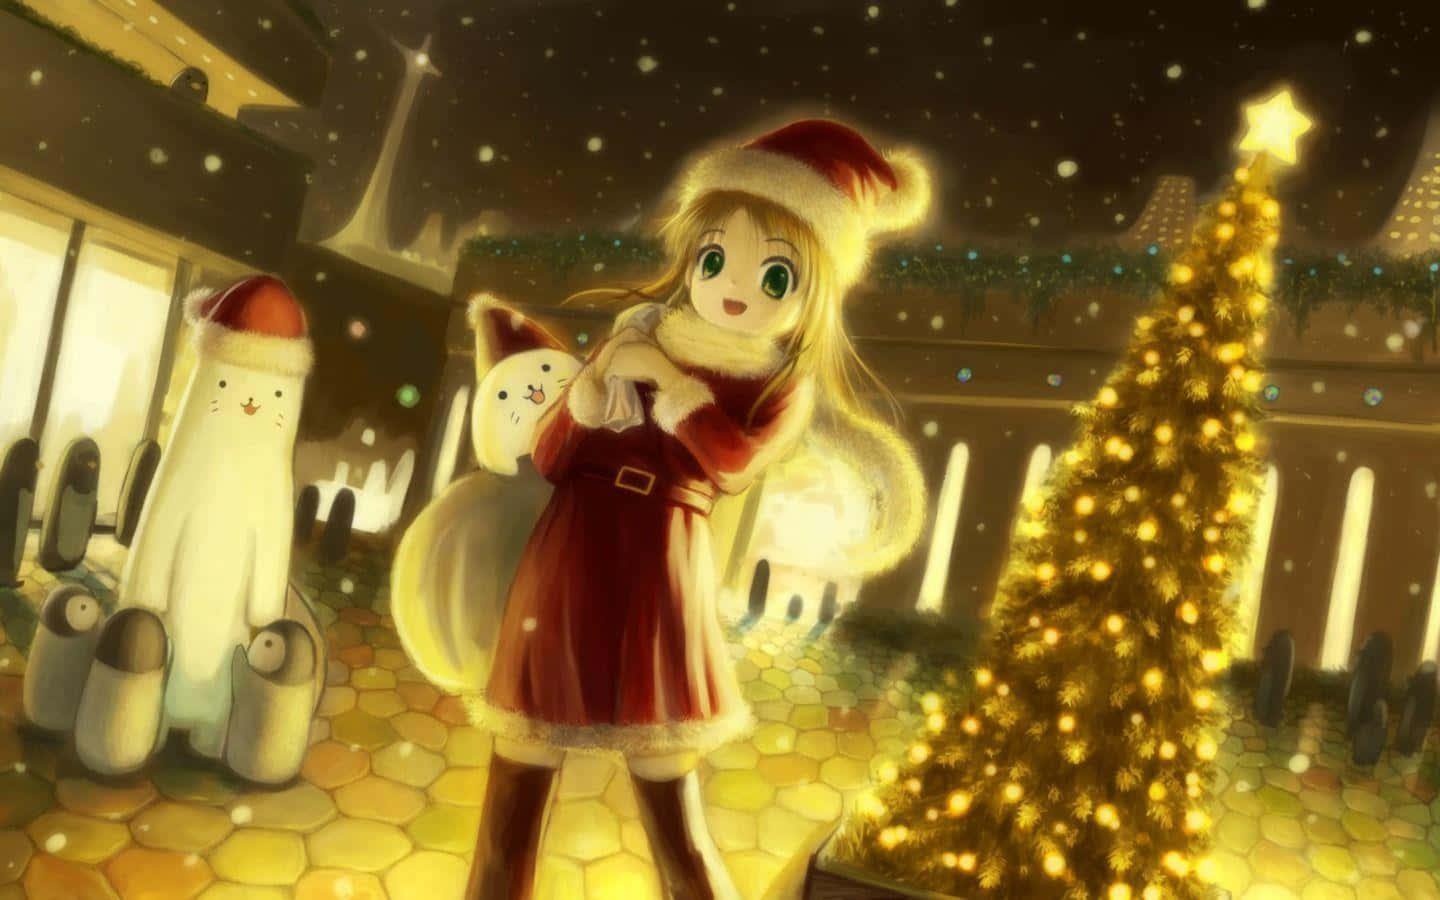 Feiernsie Die Freude Der Saison Mit Anime Weihnachten!